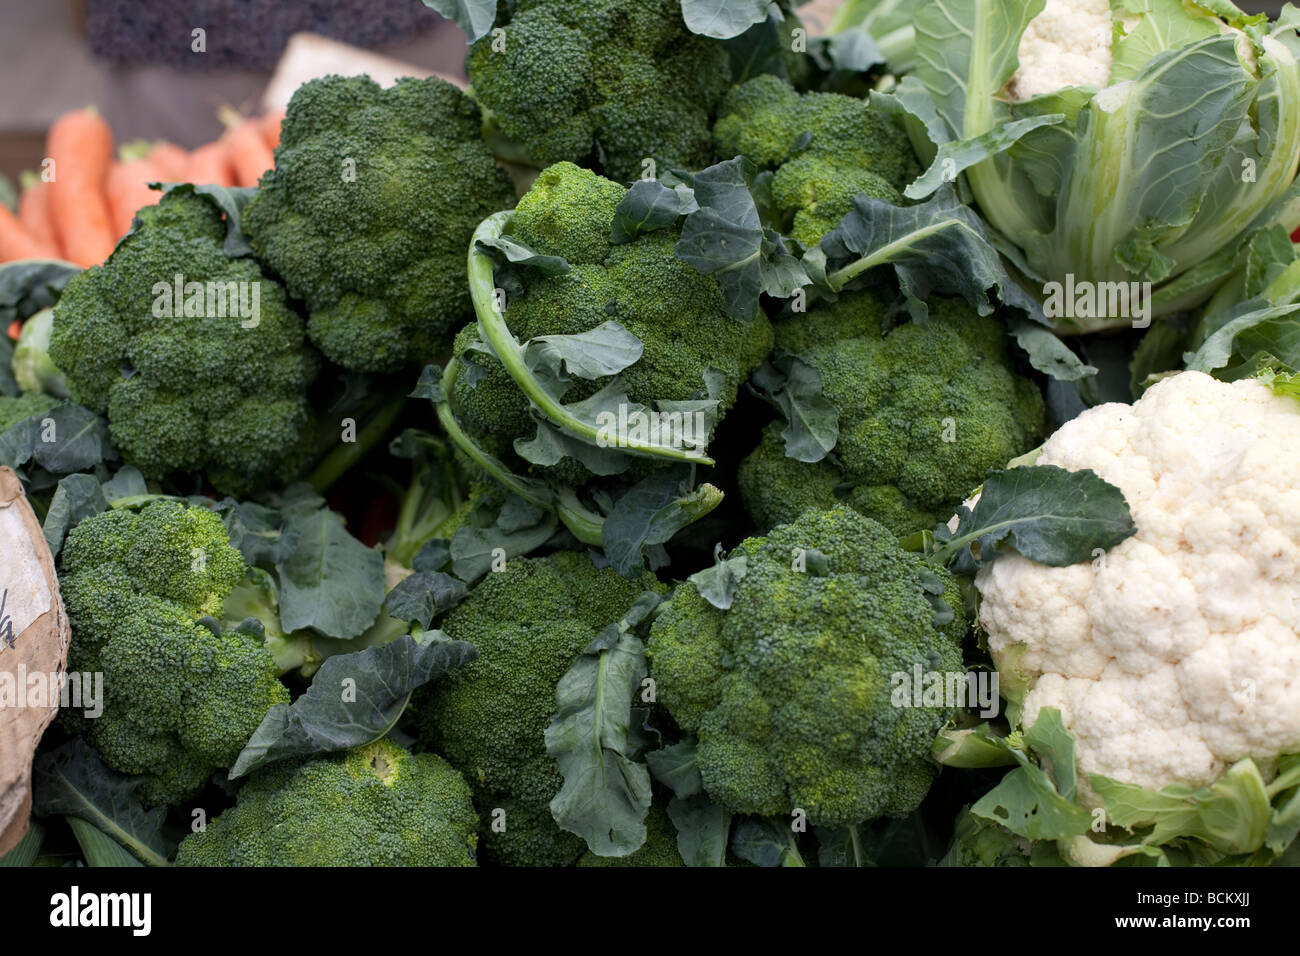 Les légumes cultivés naturellement vendus sur le marché le brocoli et chou-fleur Banque D'Images